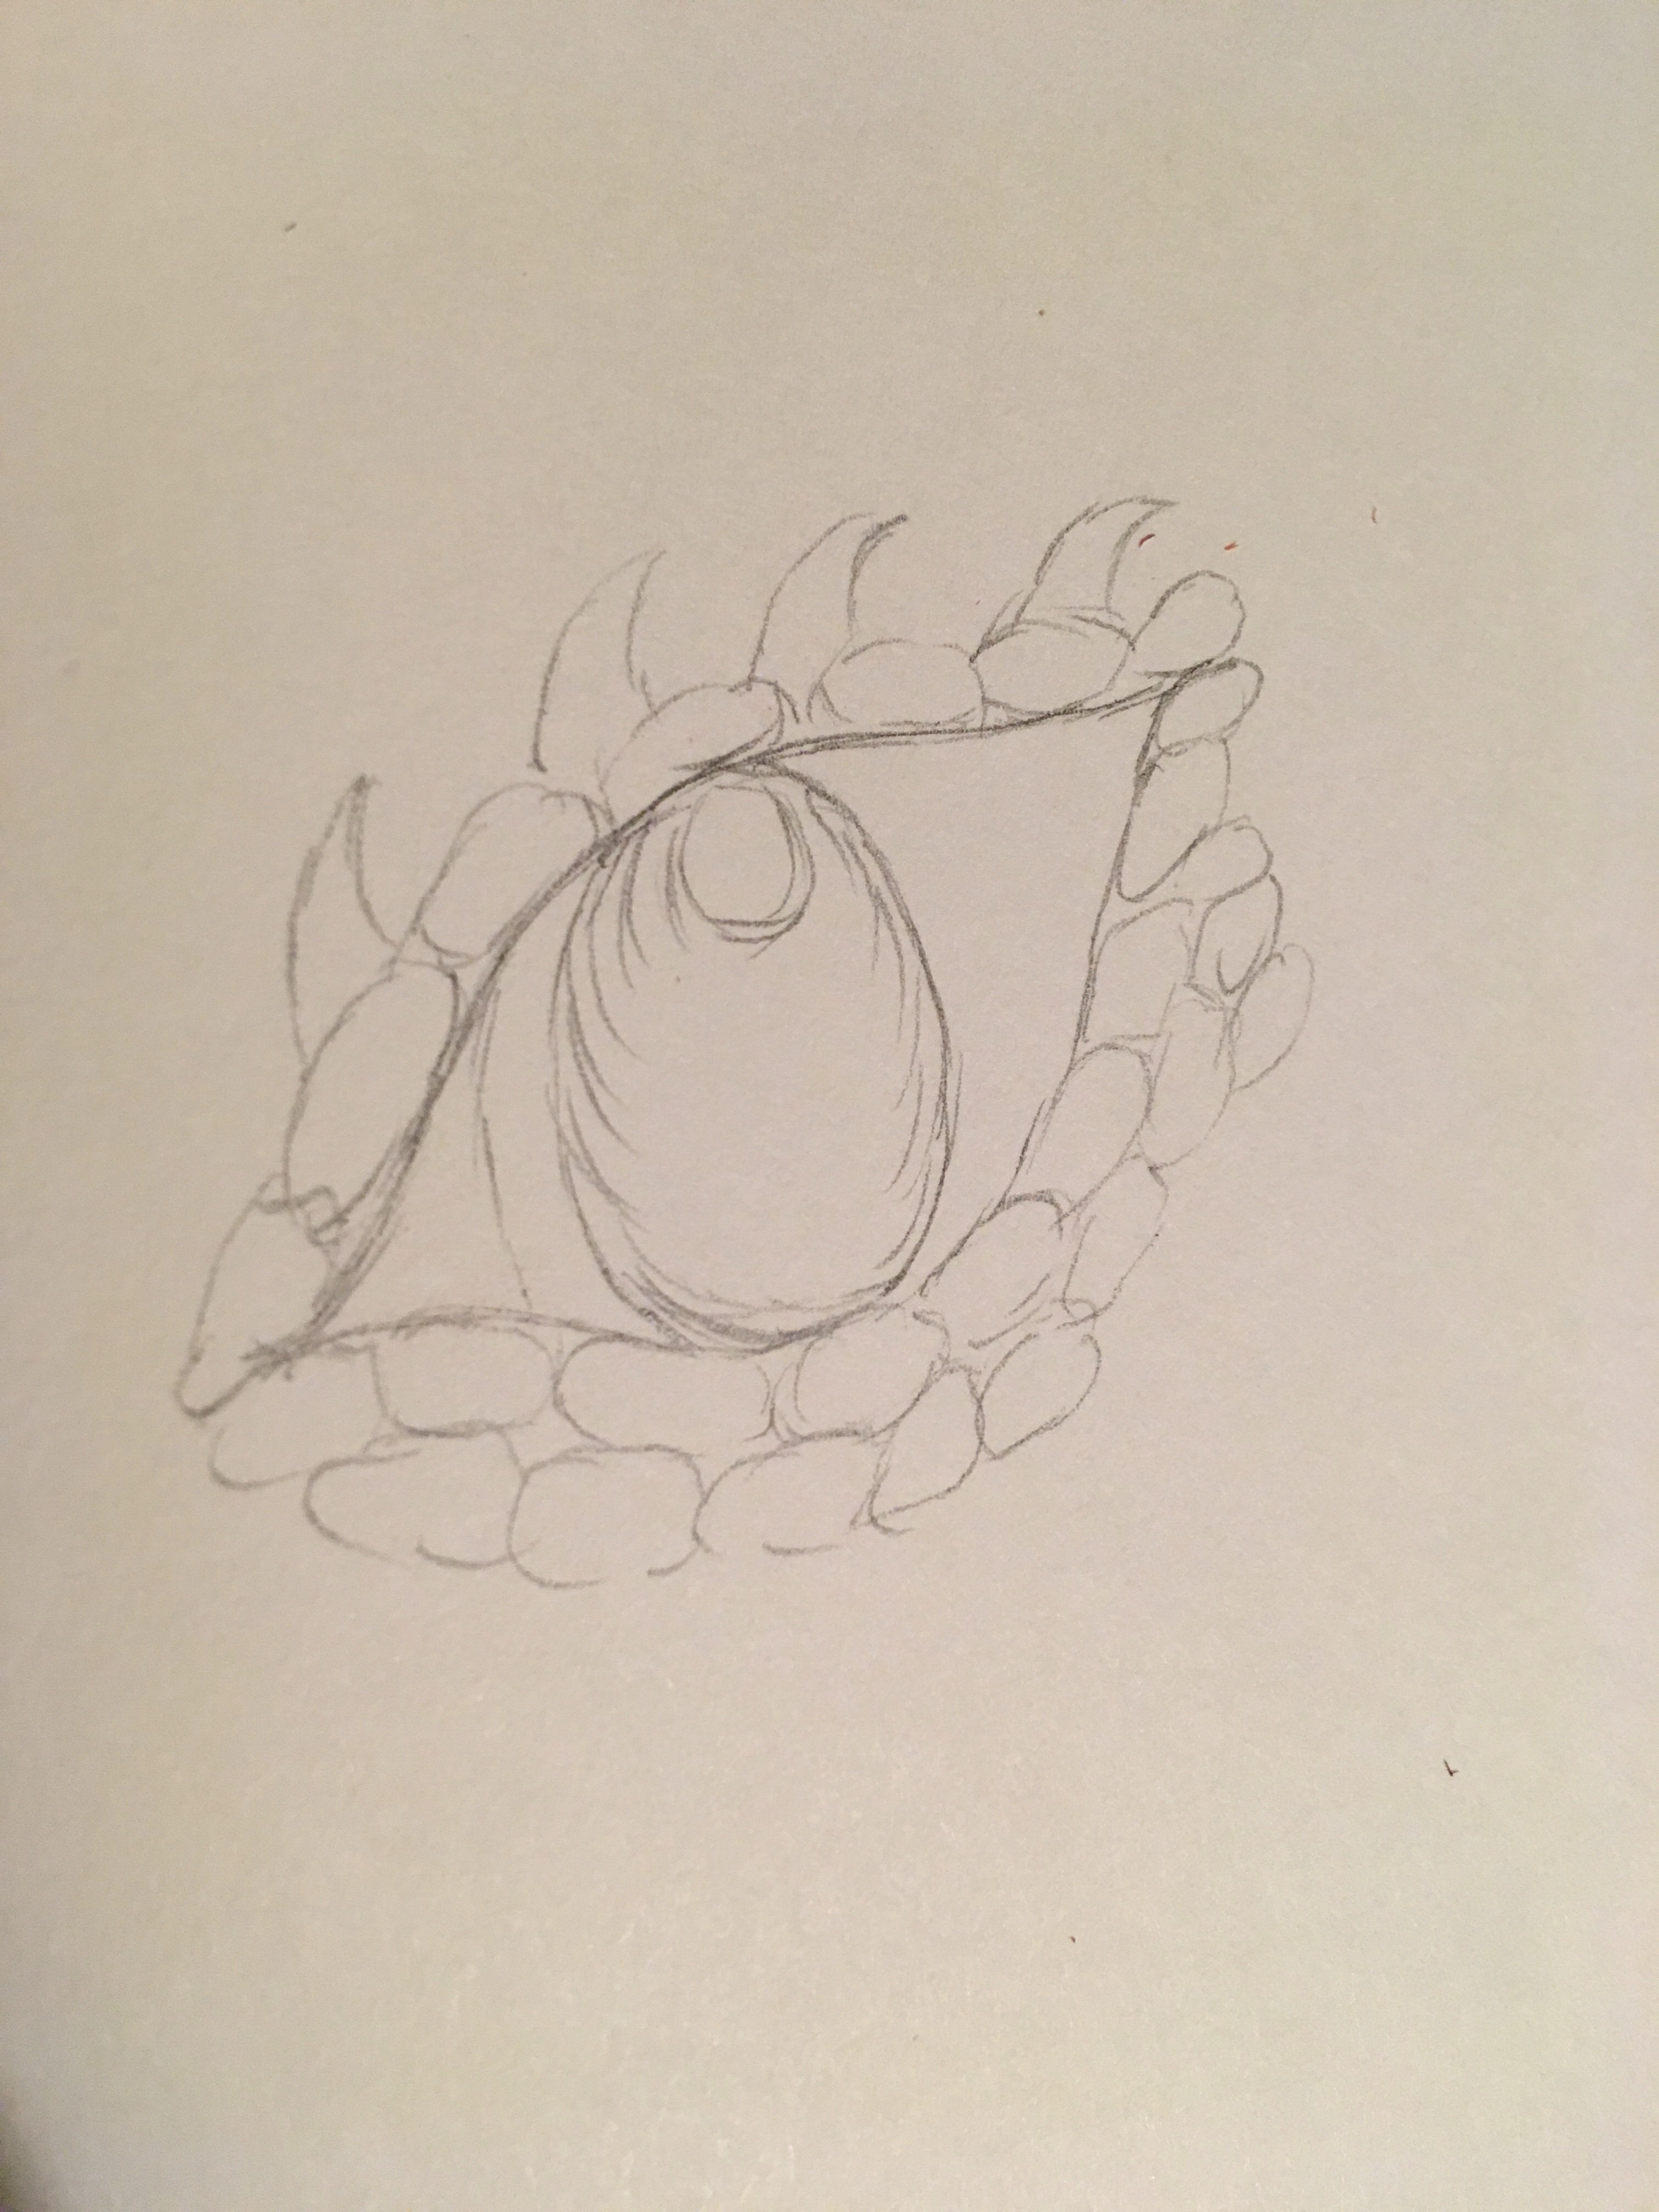 Dragon eye sketch pencil spikes for eyelid